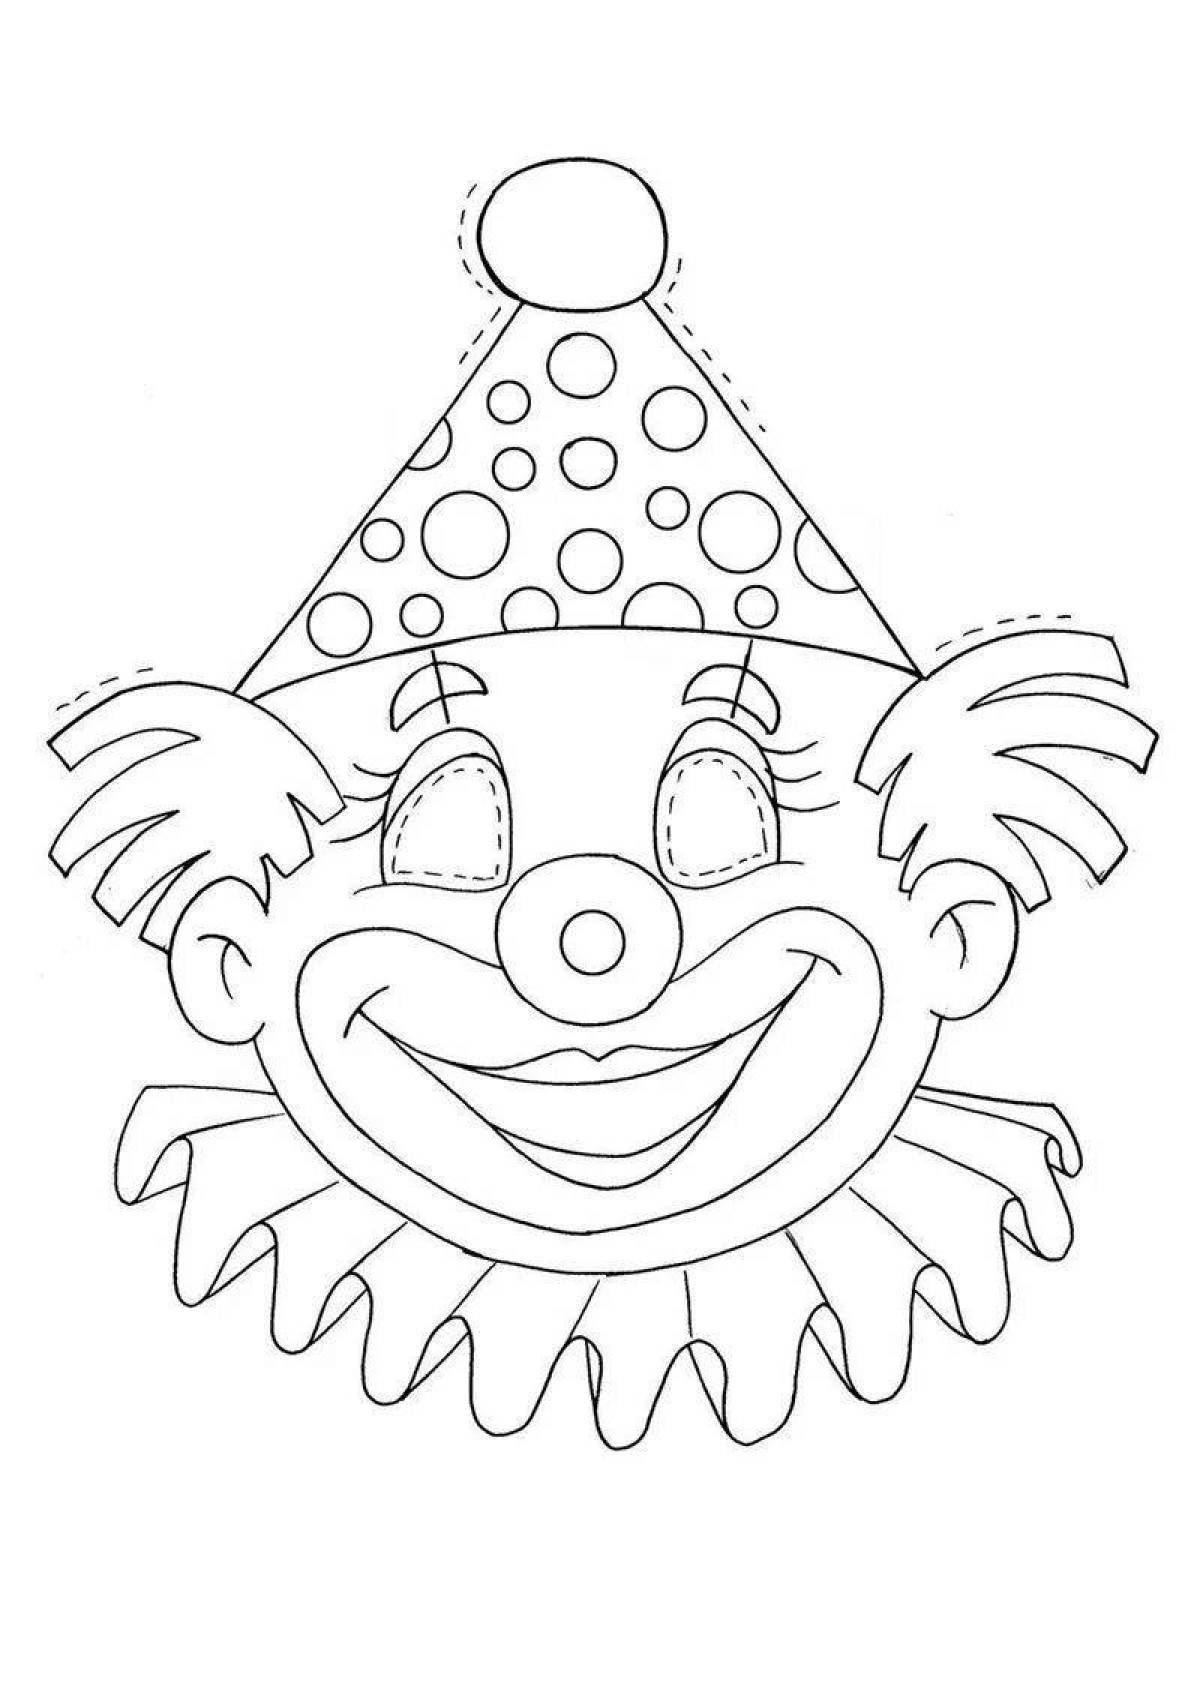 Шаблон маски на 1 апреля. Клоун раскраска. Клоун раскраска для детей. Маска клоун раскраска для детей. Маски клоуна для детей.